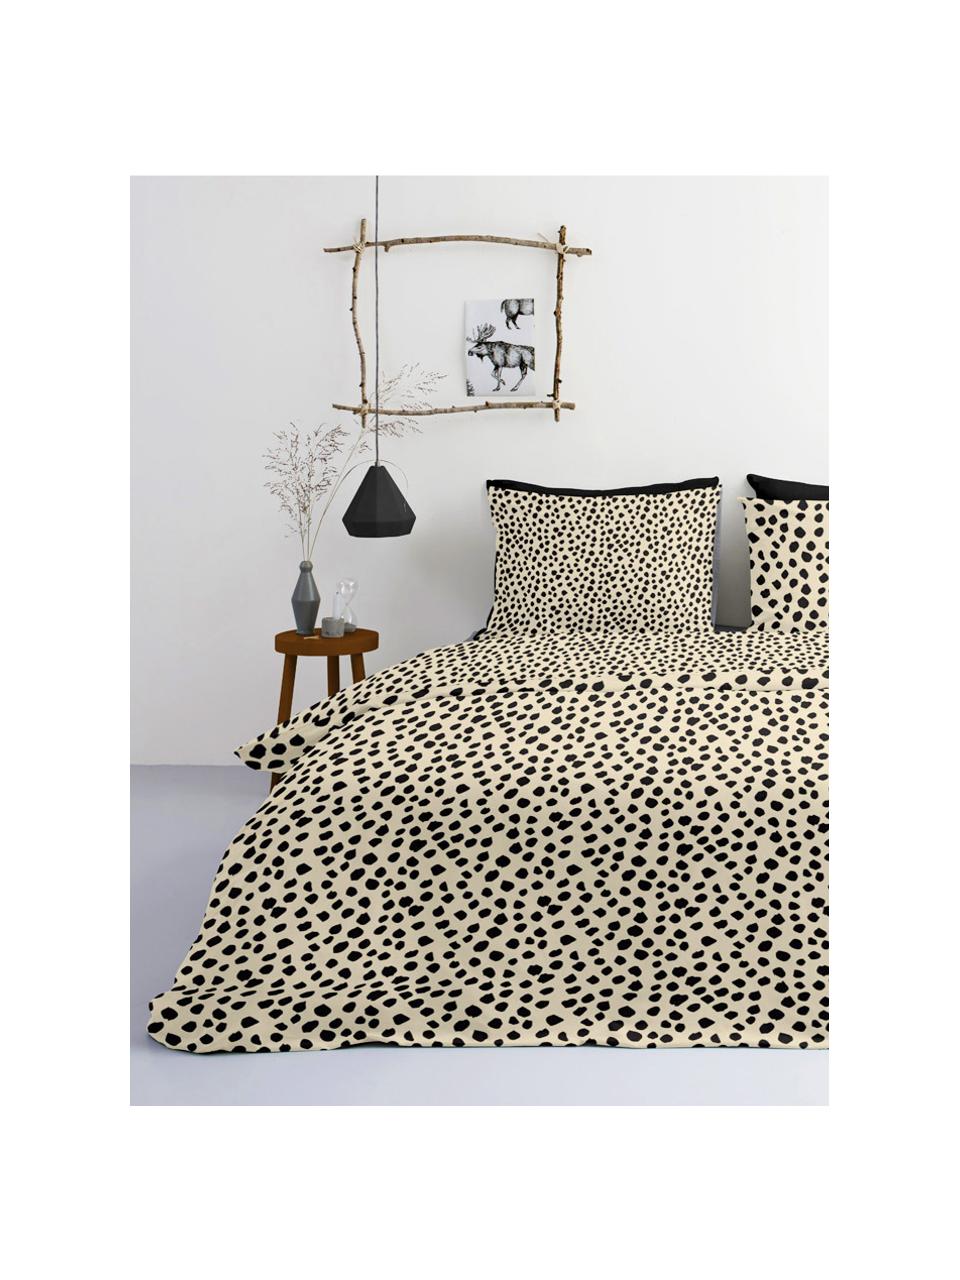 Baumwoll-Bettwäsche Go Wild mit Leoparden-Muster, 100% Baumwolle

Bettwäsche aus Baumwolle fühlt sich auf der Haut angenehm weich an, nimmt Feuchtigkeit gut auf und eignet sich für Allergiker., Beige,Schwarz, 200 x 220 cm + 2 Kissen 80 x 80 cm